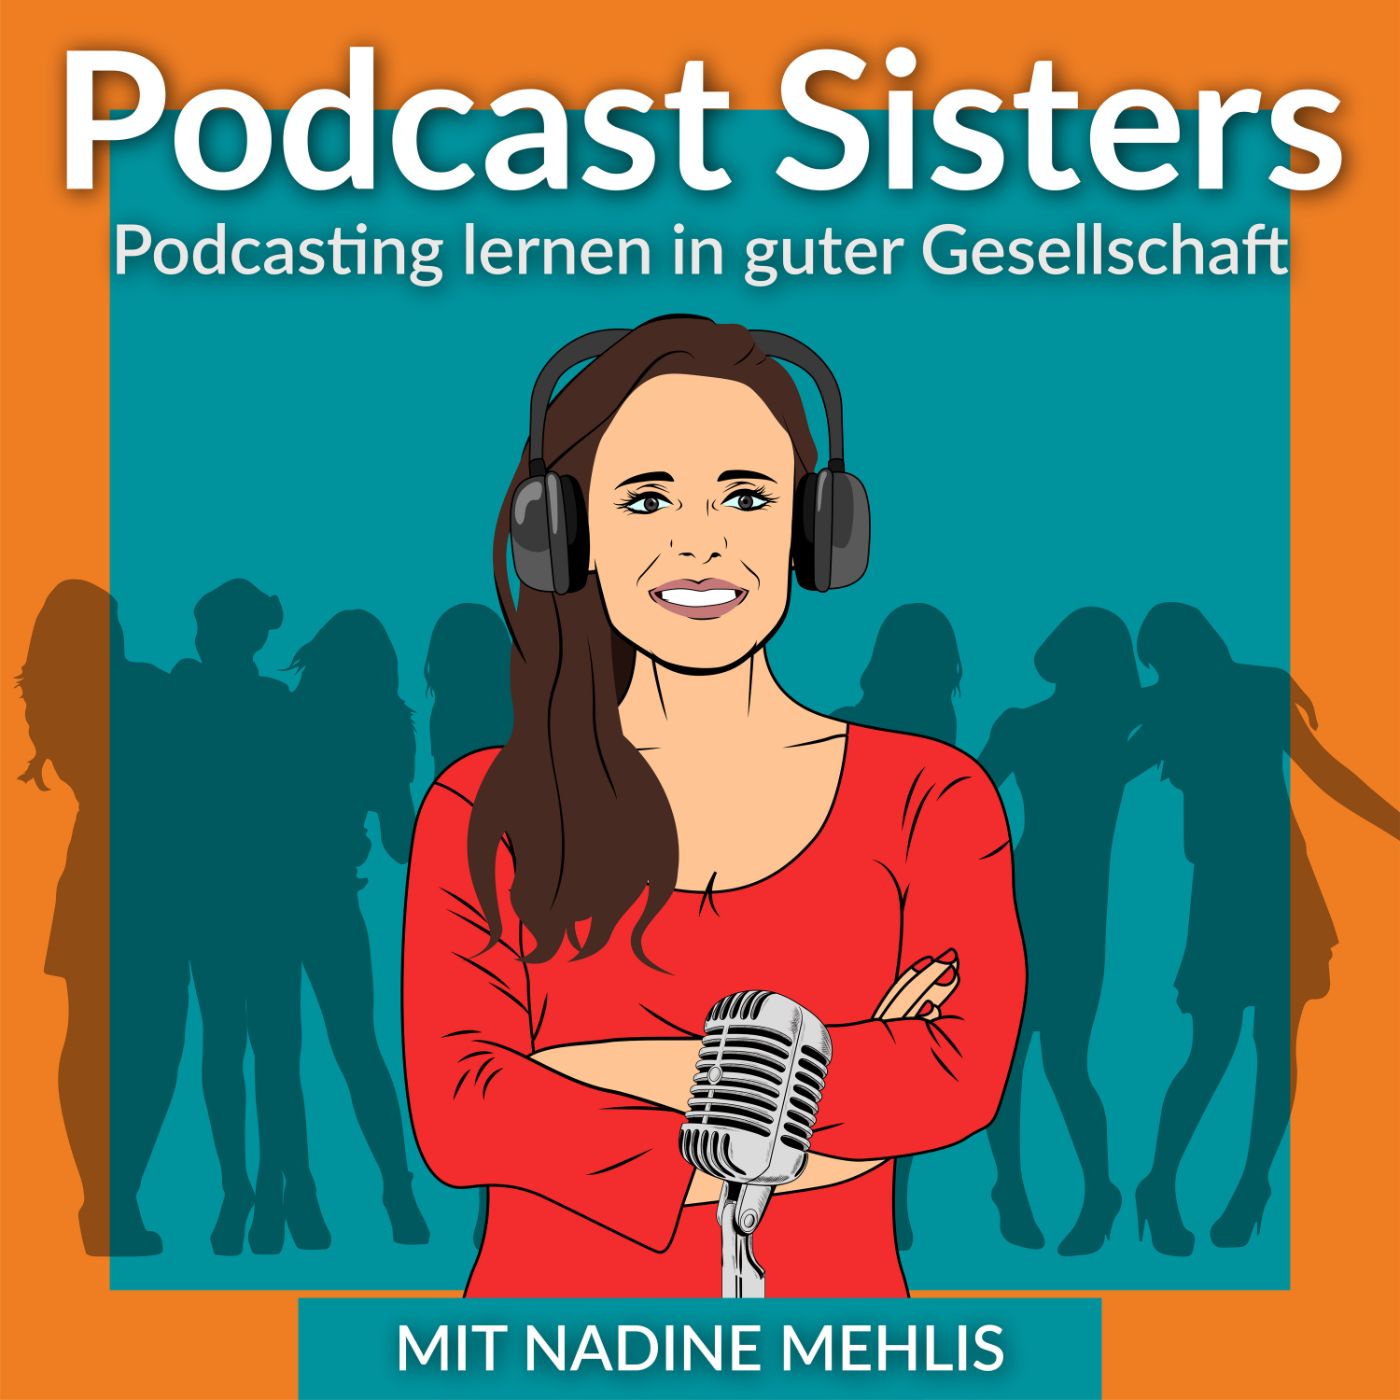 PODCAST SISTERS - Podcast erstellen für Kundenbindung und Online Marketing